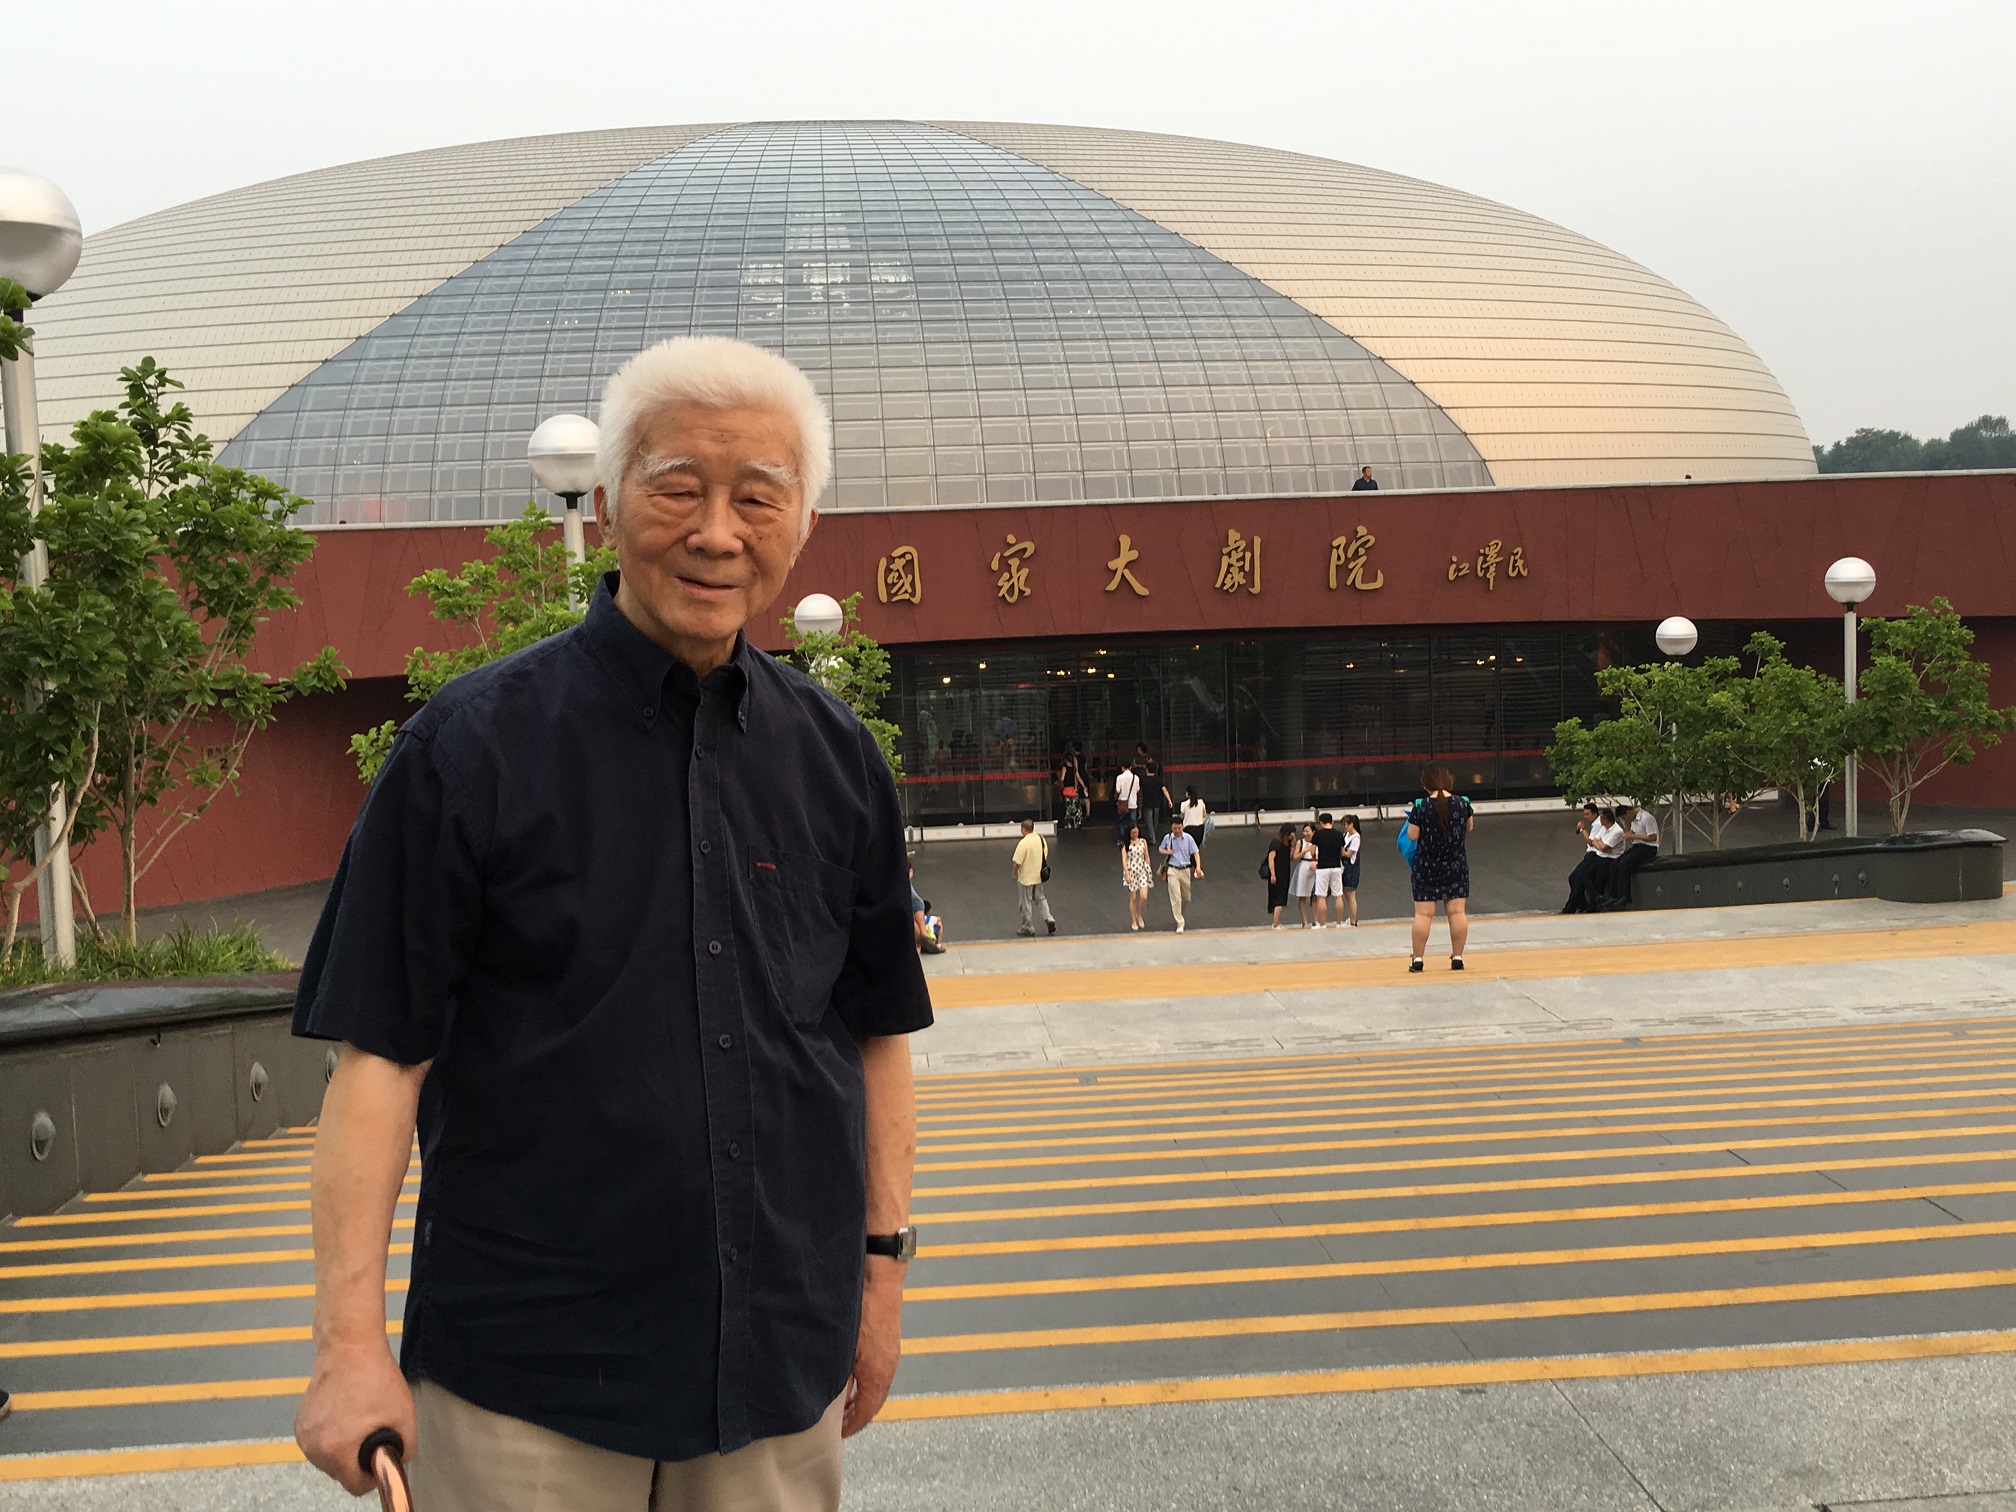 2016年7月柳鸣九前往国家大剧院欣赏慈善音乐会。江胜信 摄.jpg